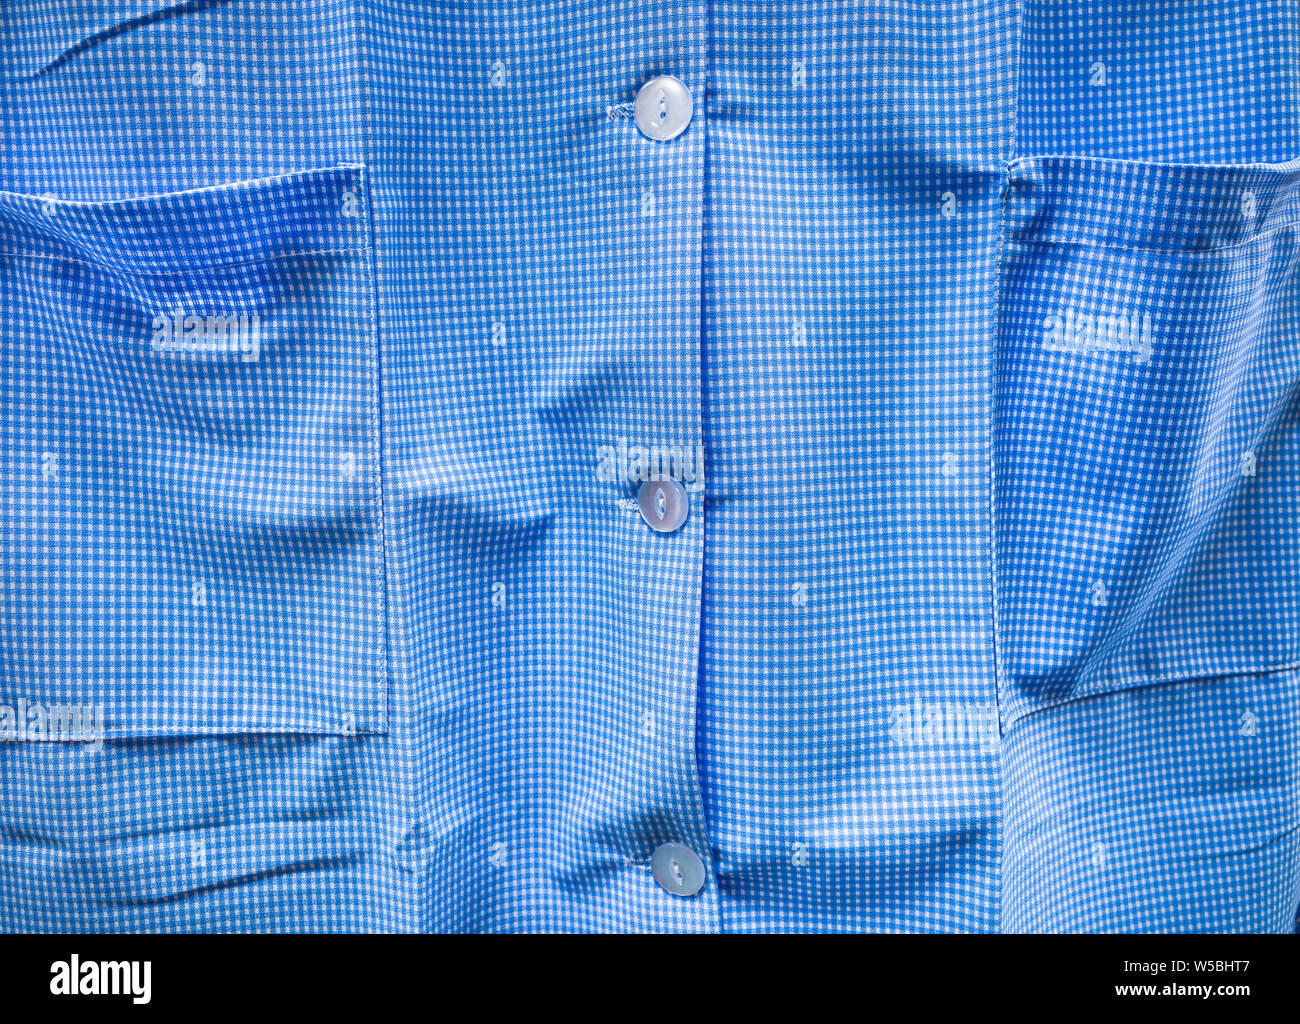 Blau kariertem Hemd, das typische Design in Großbritannien für Frauen-, Sozial- und Schuluniform. Stockfoto